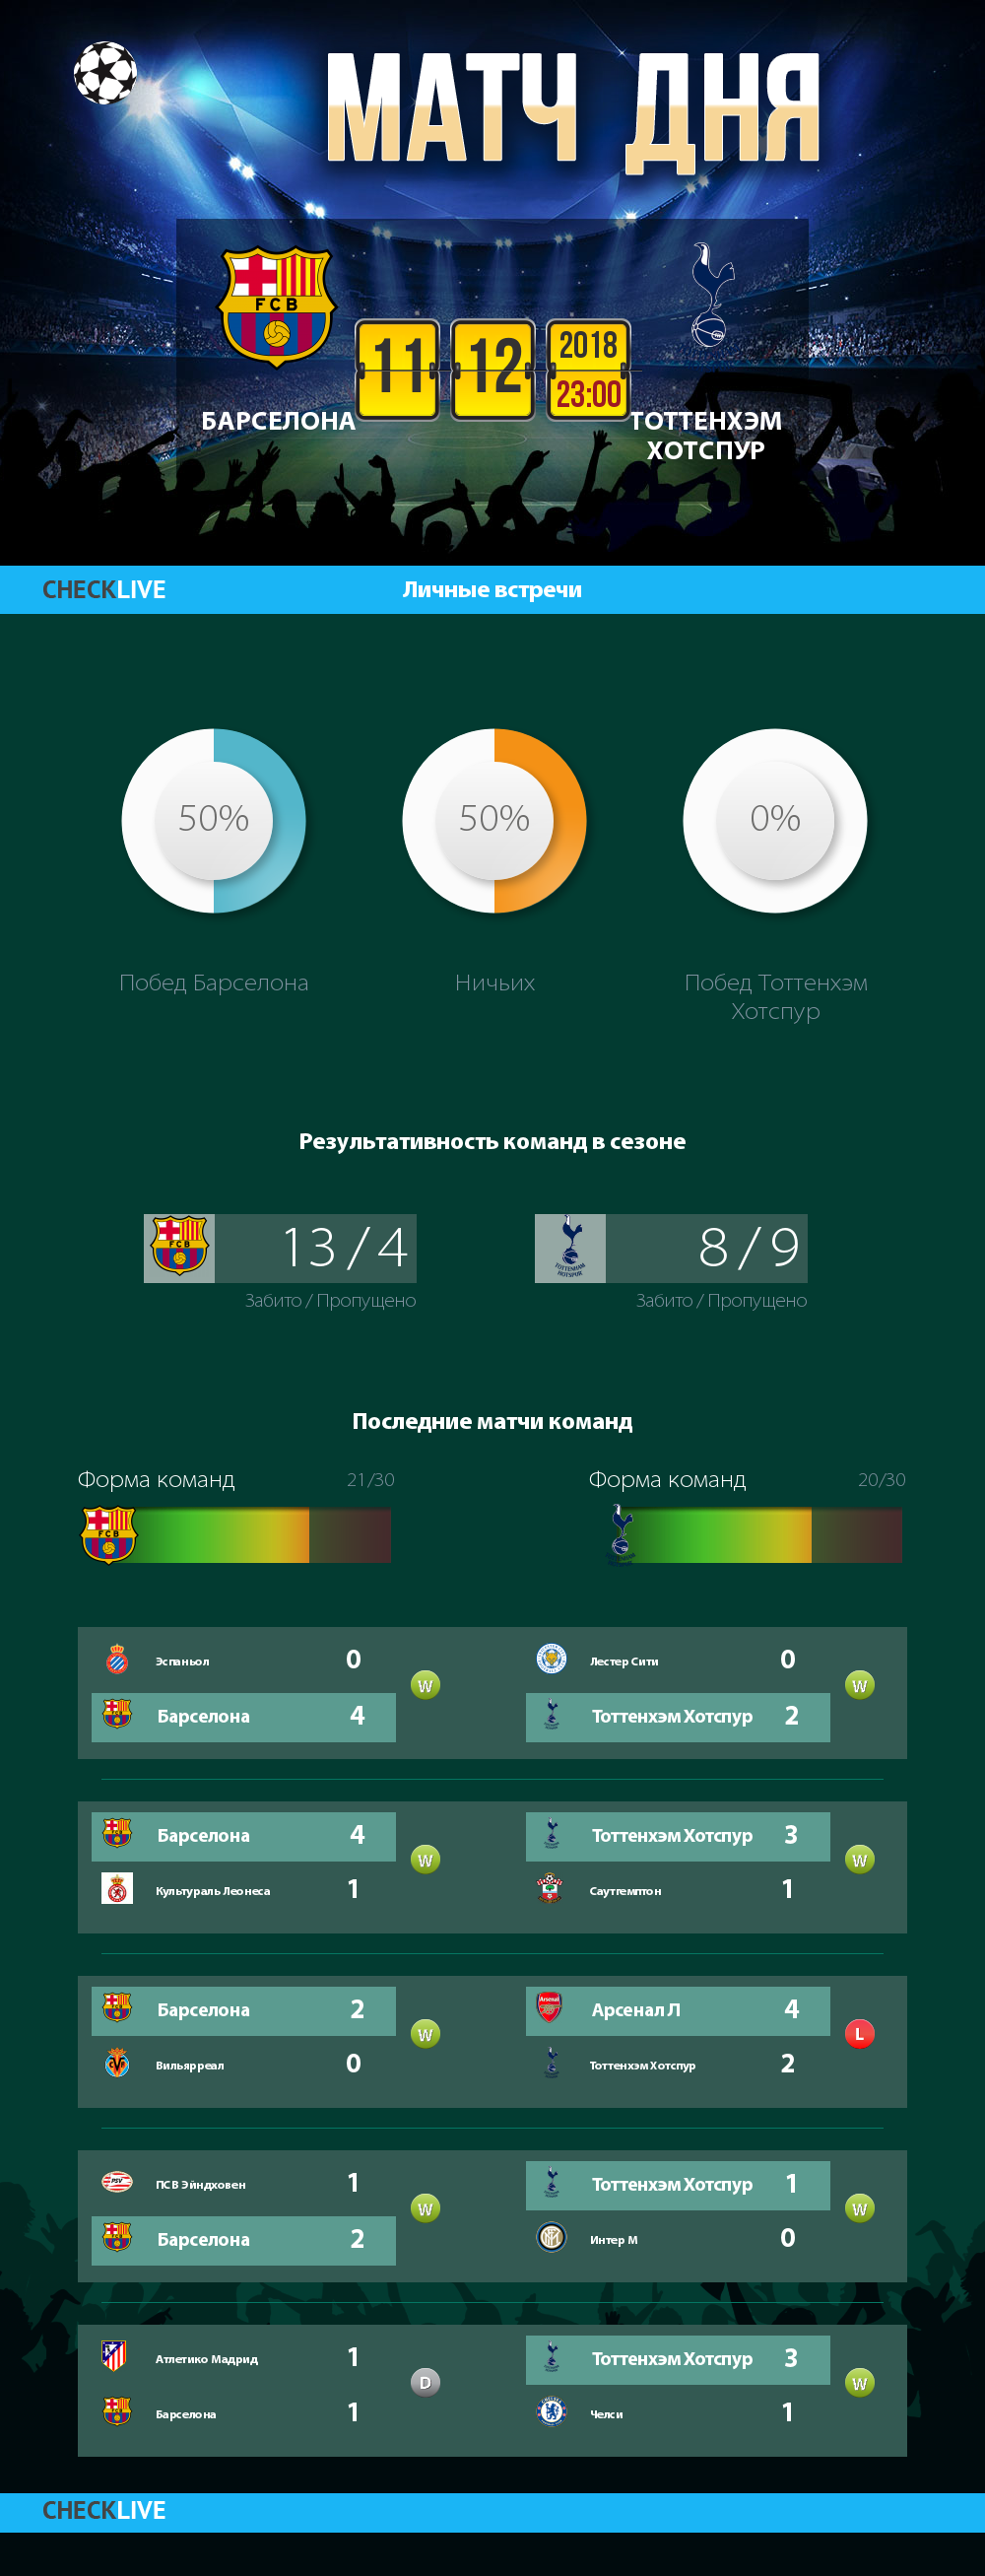 Инфографика Барселона и Тоттенхэм Хотспур матч дня 11.12.2018